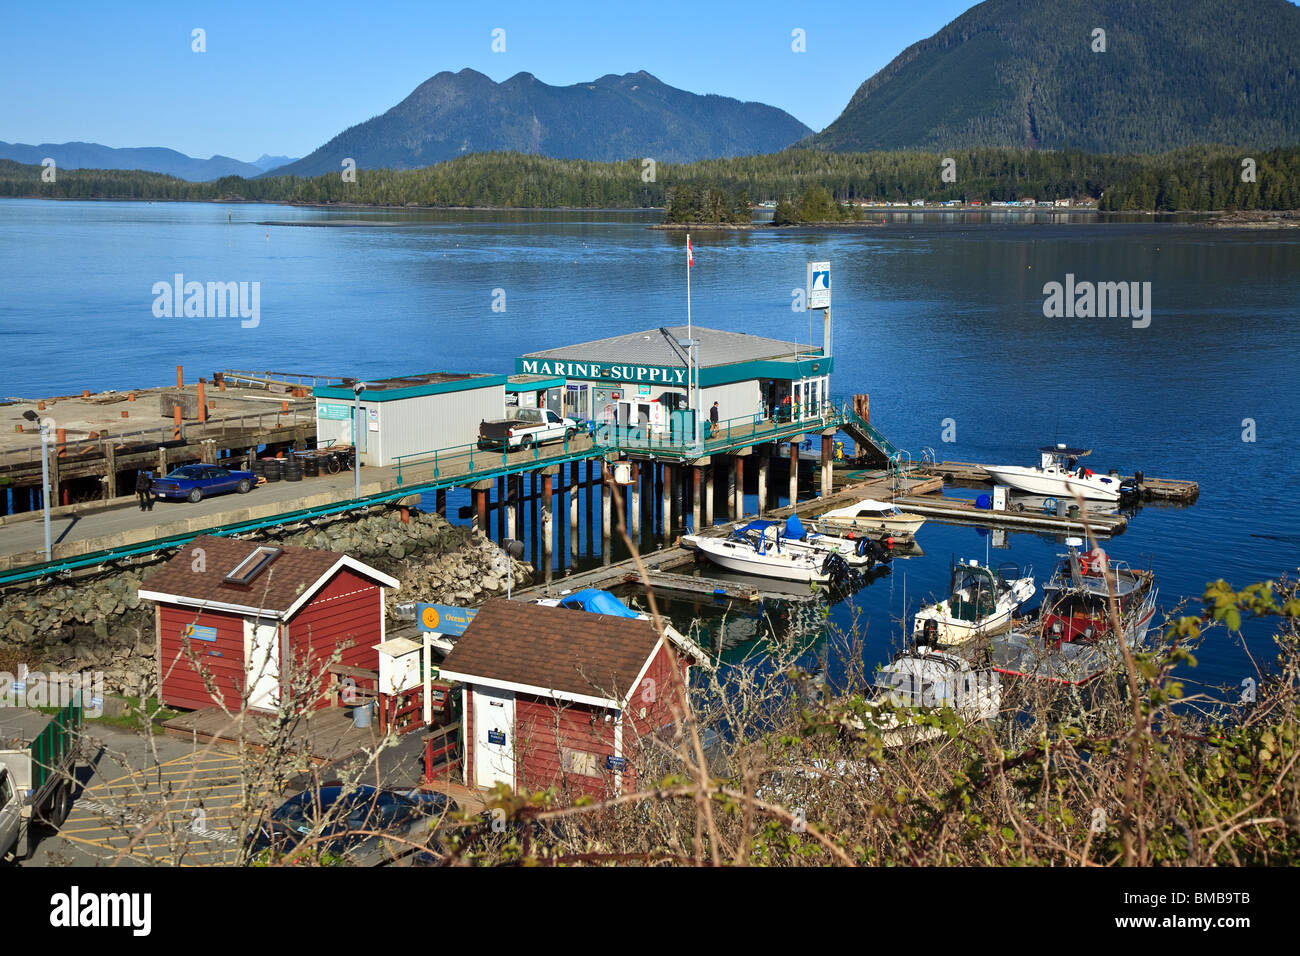 Edificio de alimentación marina en dock en Tofino, Vancouver Island, British Columbia, Canadá Foto de stock